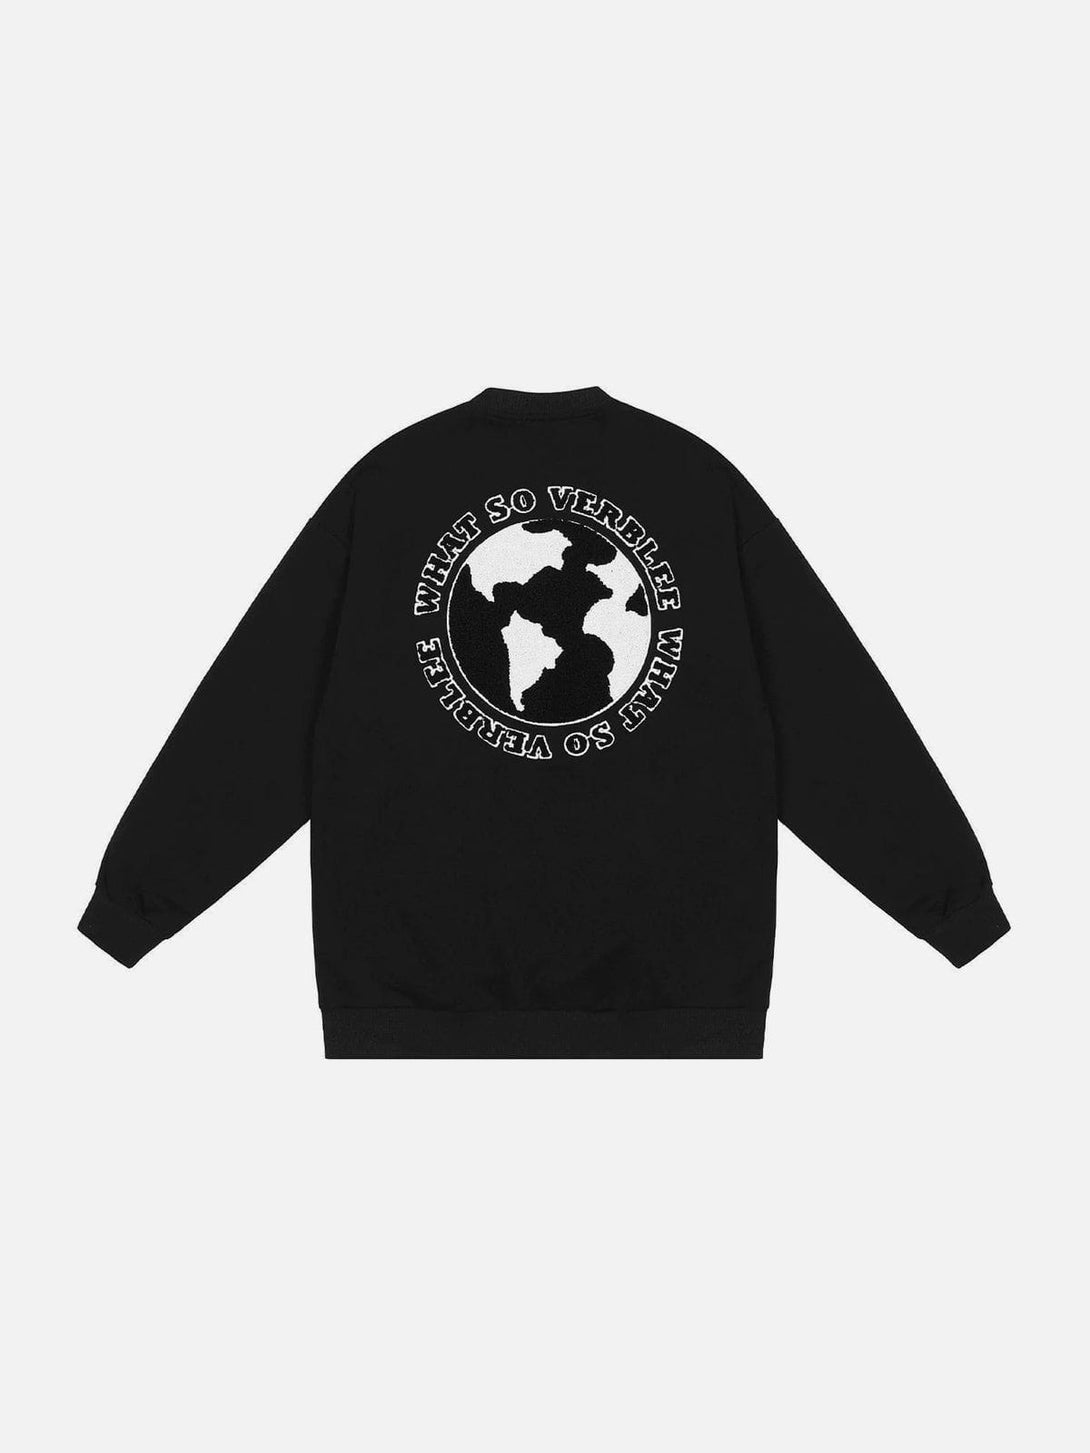 Majesda® - Earth Letter Pattern Zipper Decoration Sweatshirt outfit ideas streetwear fashion